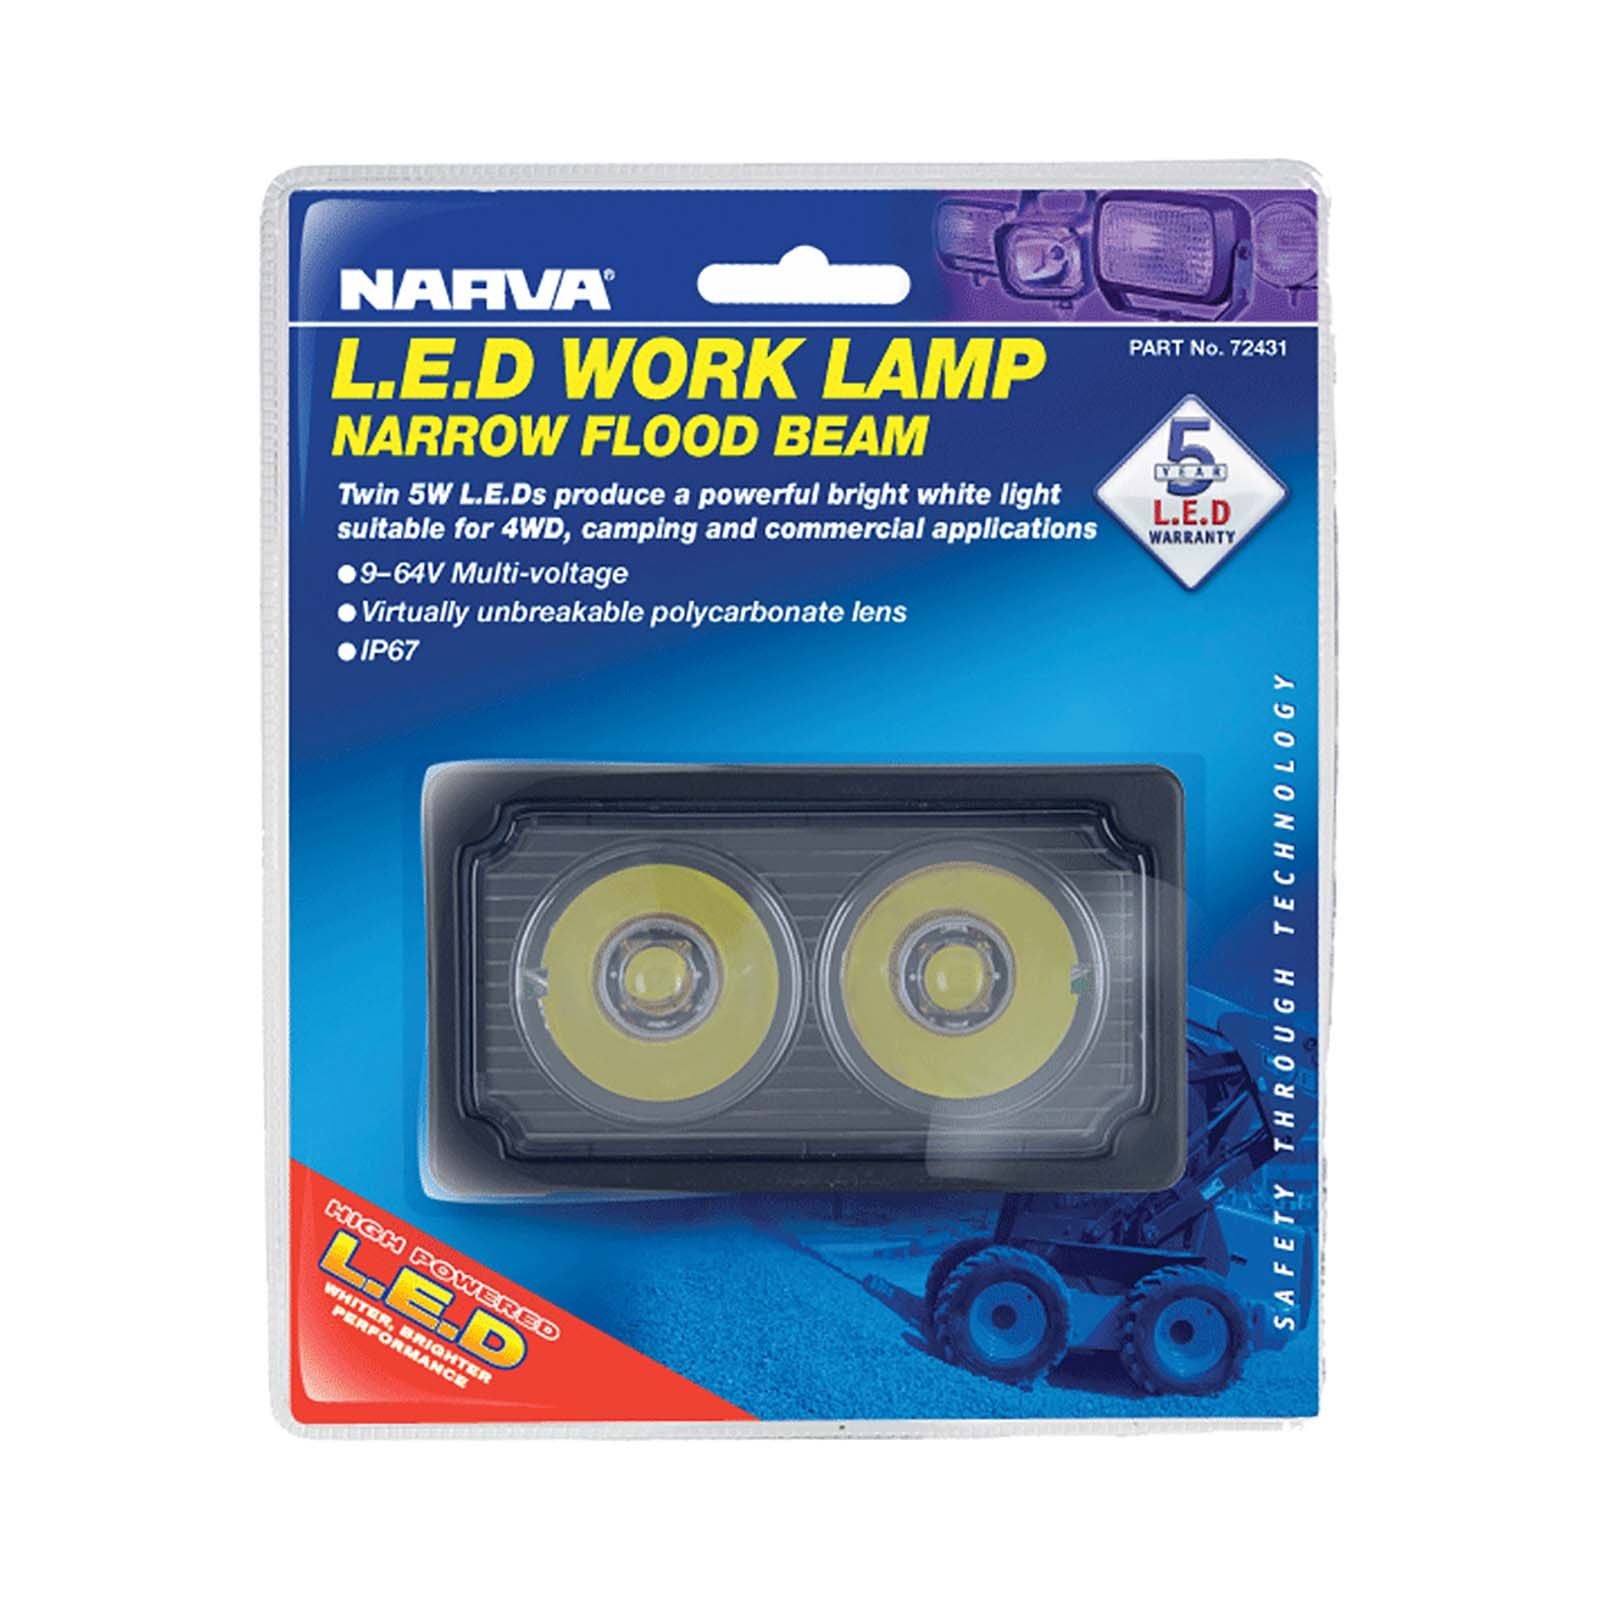 9-64V LED Work Lamp Spread Beam - 1000 lumens